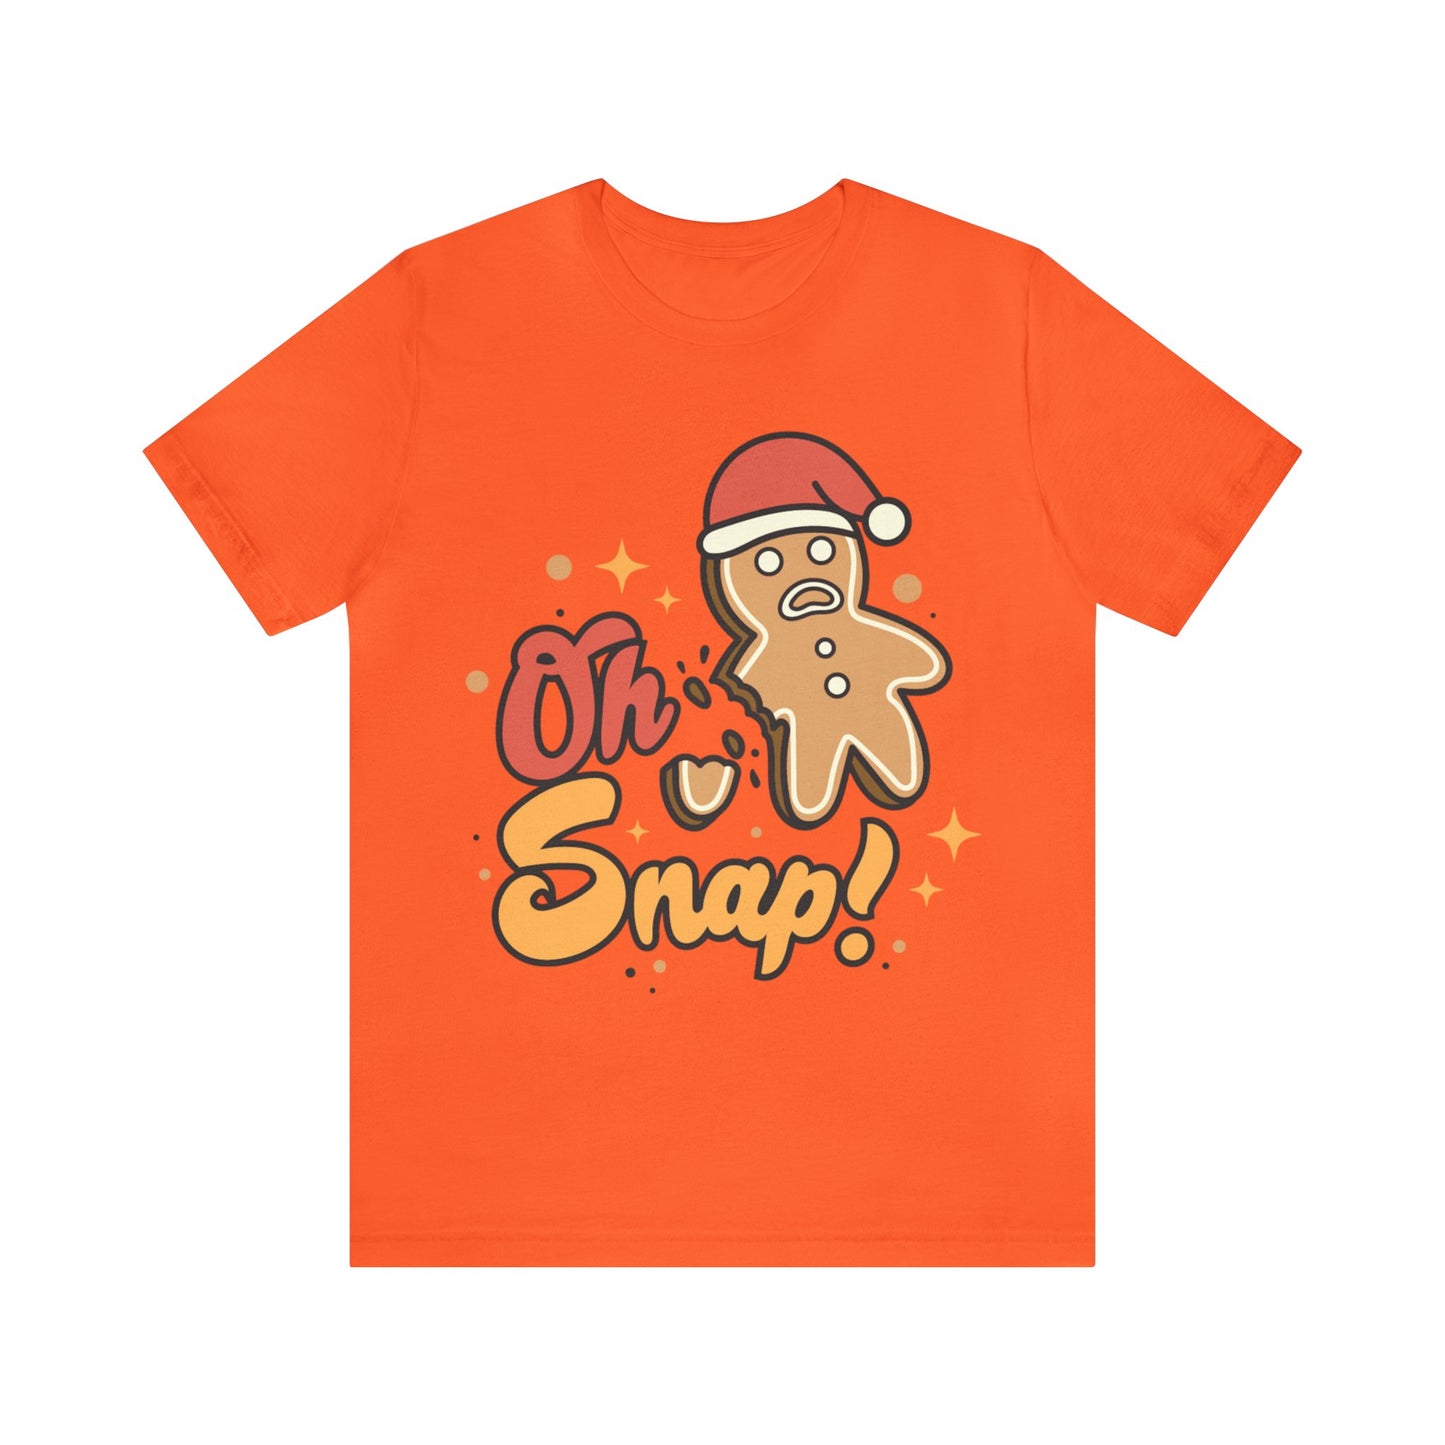 Oh Snap Gingerbread Shirt, Christmas Gingerbread Sweater, Christmas Gift, Christmas Cookie Lover Shirt, Mom Tshirt, T948